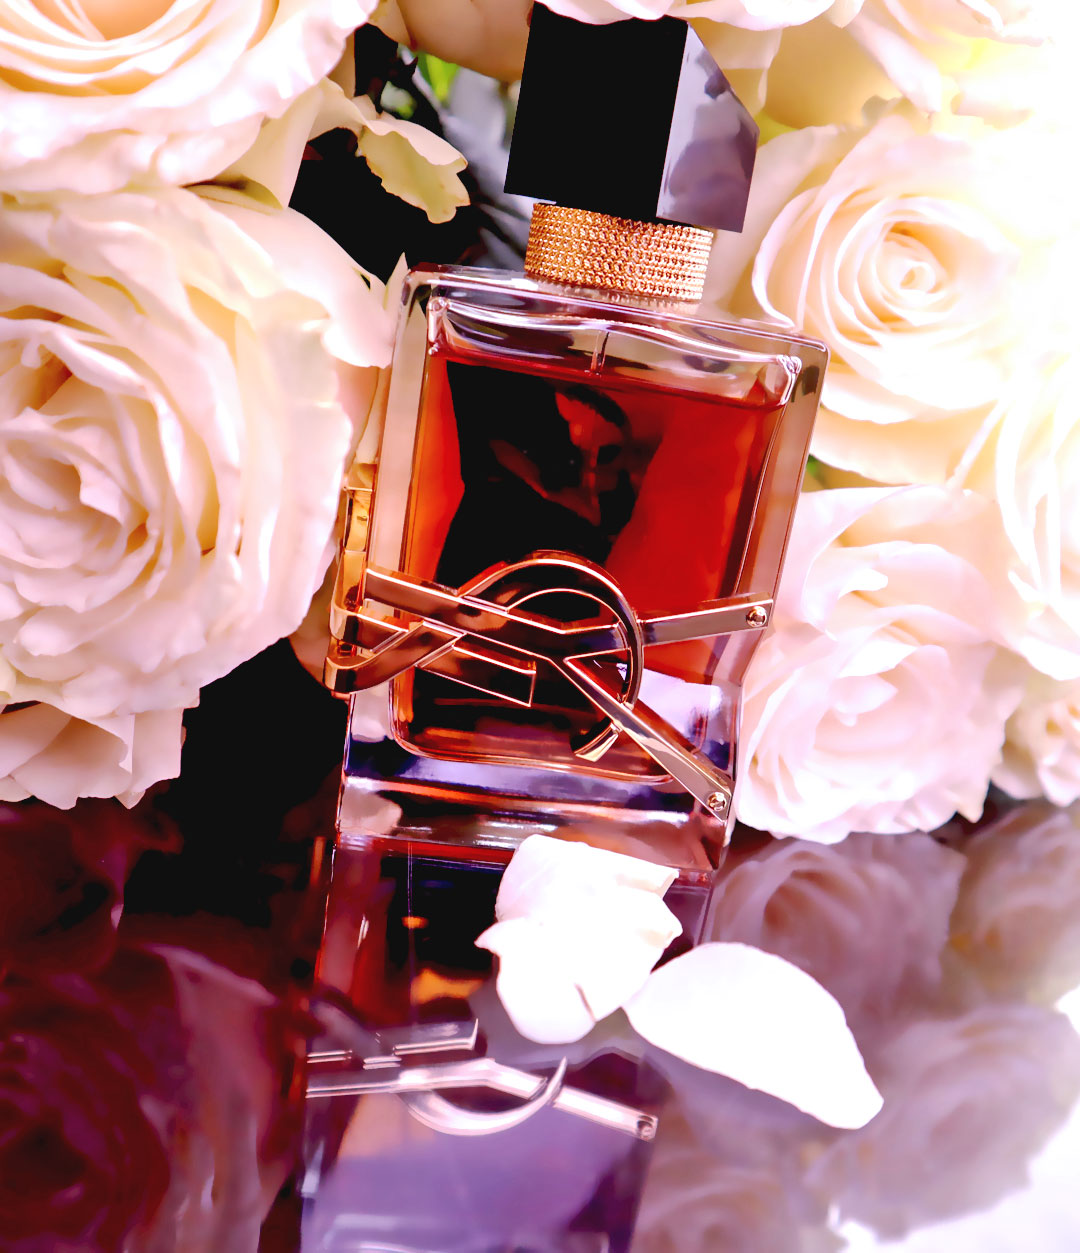 Yves Saint Laurent Libre Eau de Parfum Intense, Photo Of Joy Style Trends Media